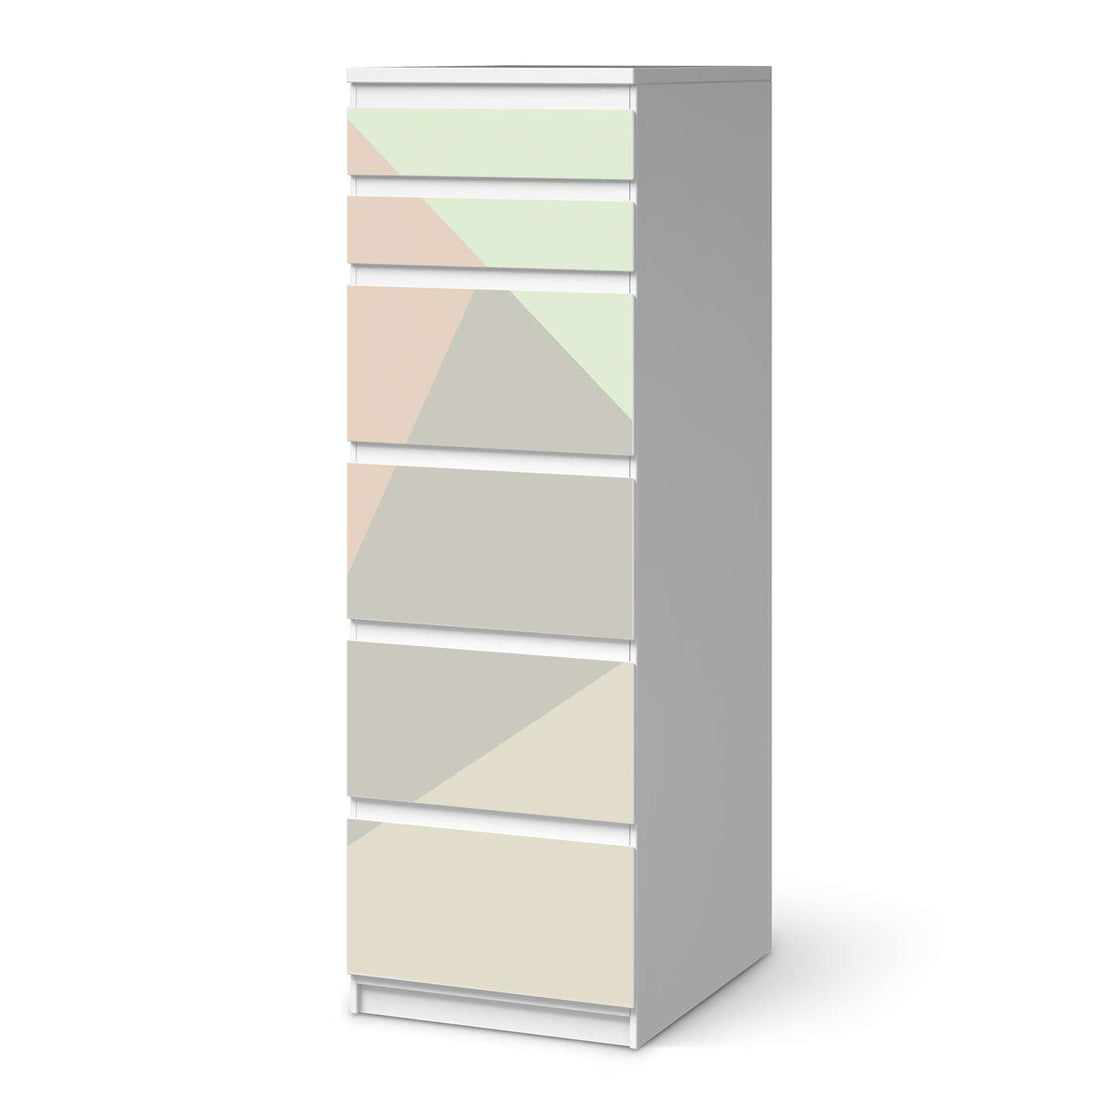 Klebefolie Pastell Geometrik - IKEA Malm Kommode 6 Schubladen (schmal)  - weiss